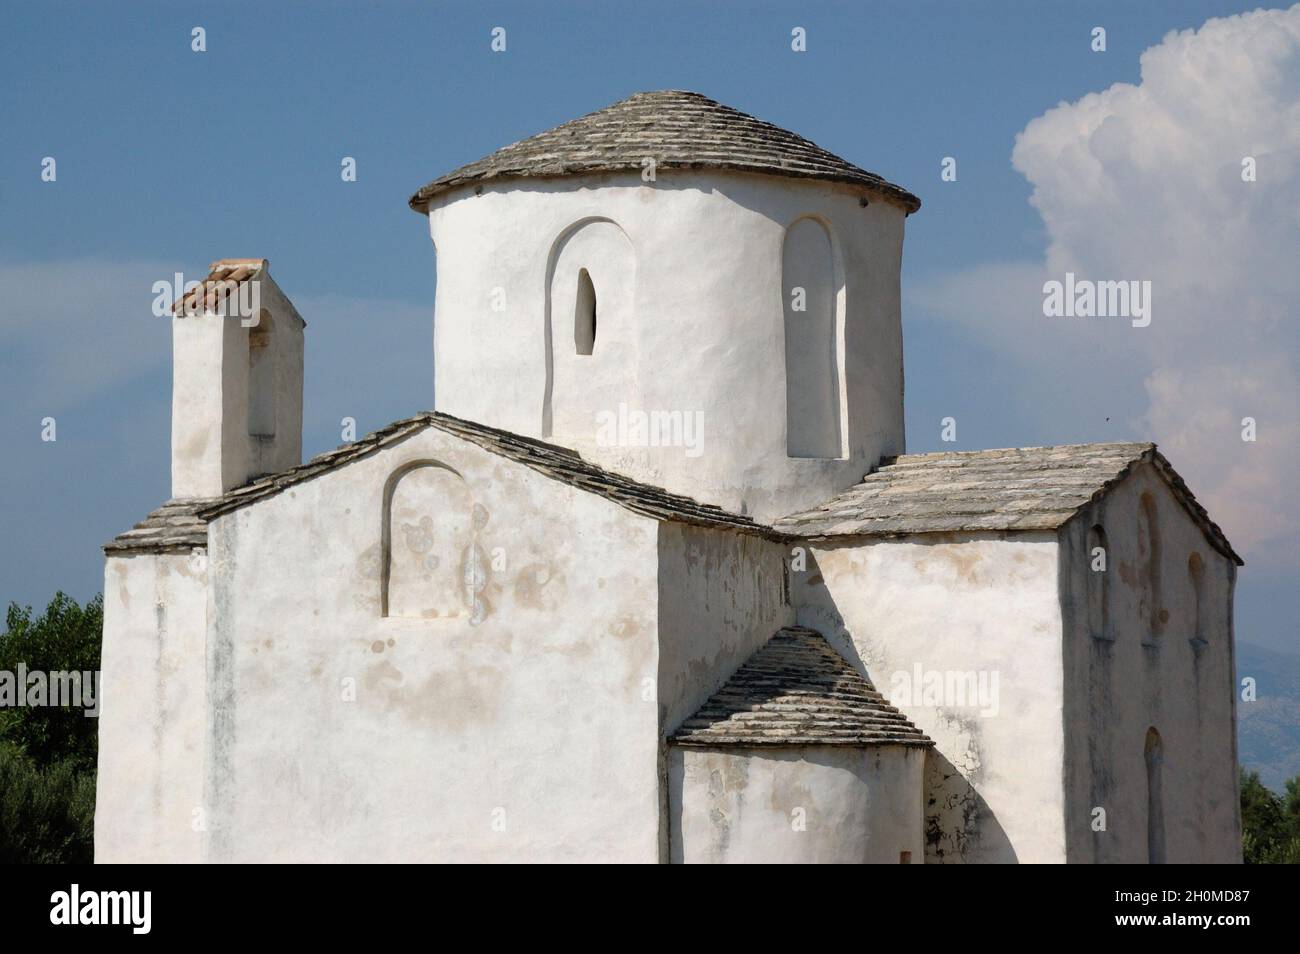 Chiesa della Santa Croce (Crkva svetog Križa) - Chiesa cattolica preromanica croata, originaria del IX secolo, Nin, contea di Zara, Croazia Foto Stock